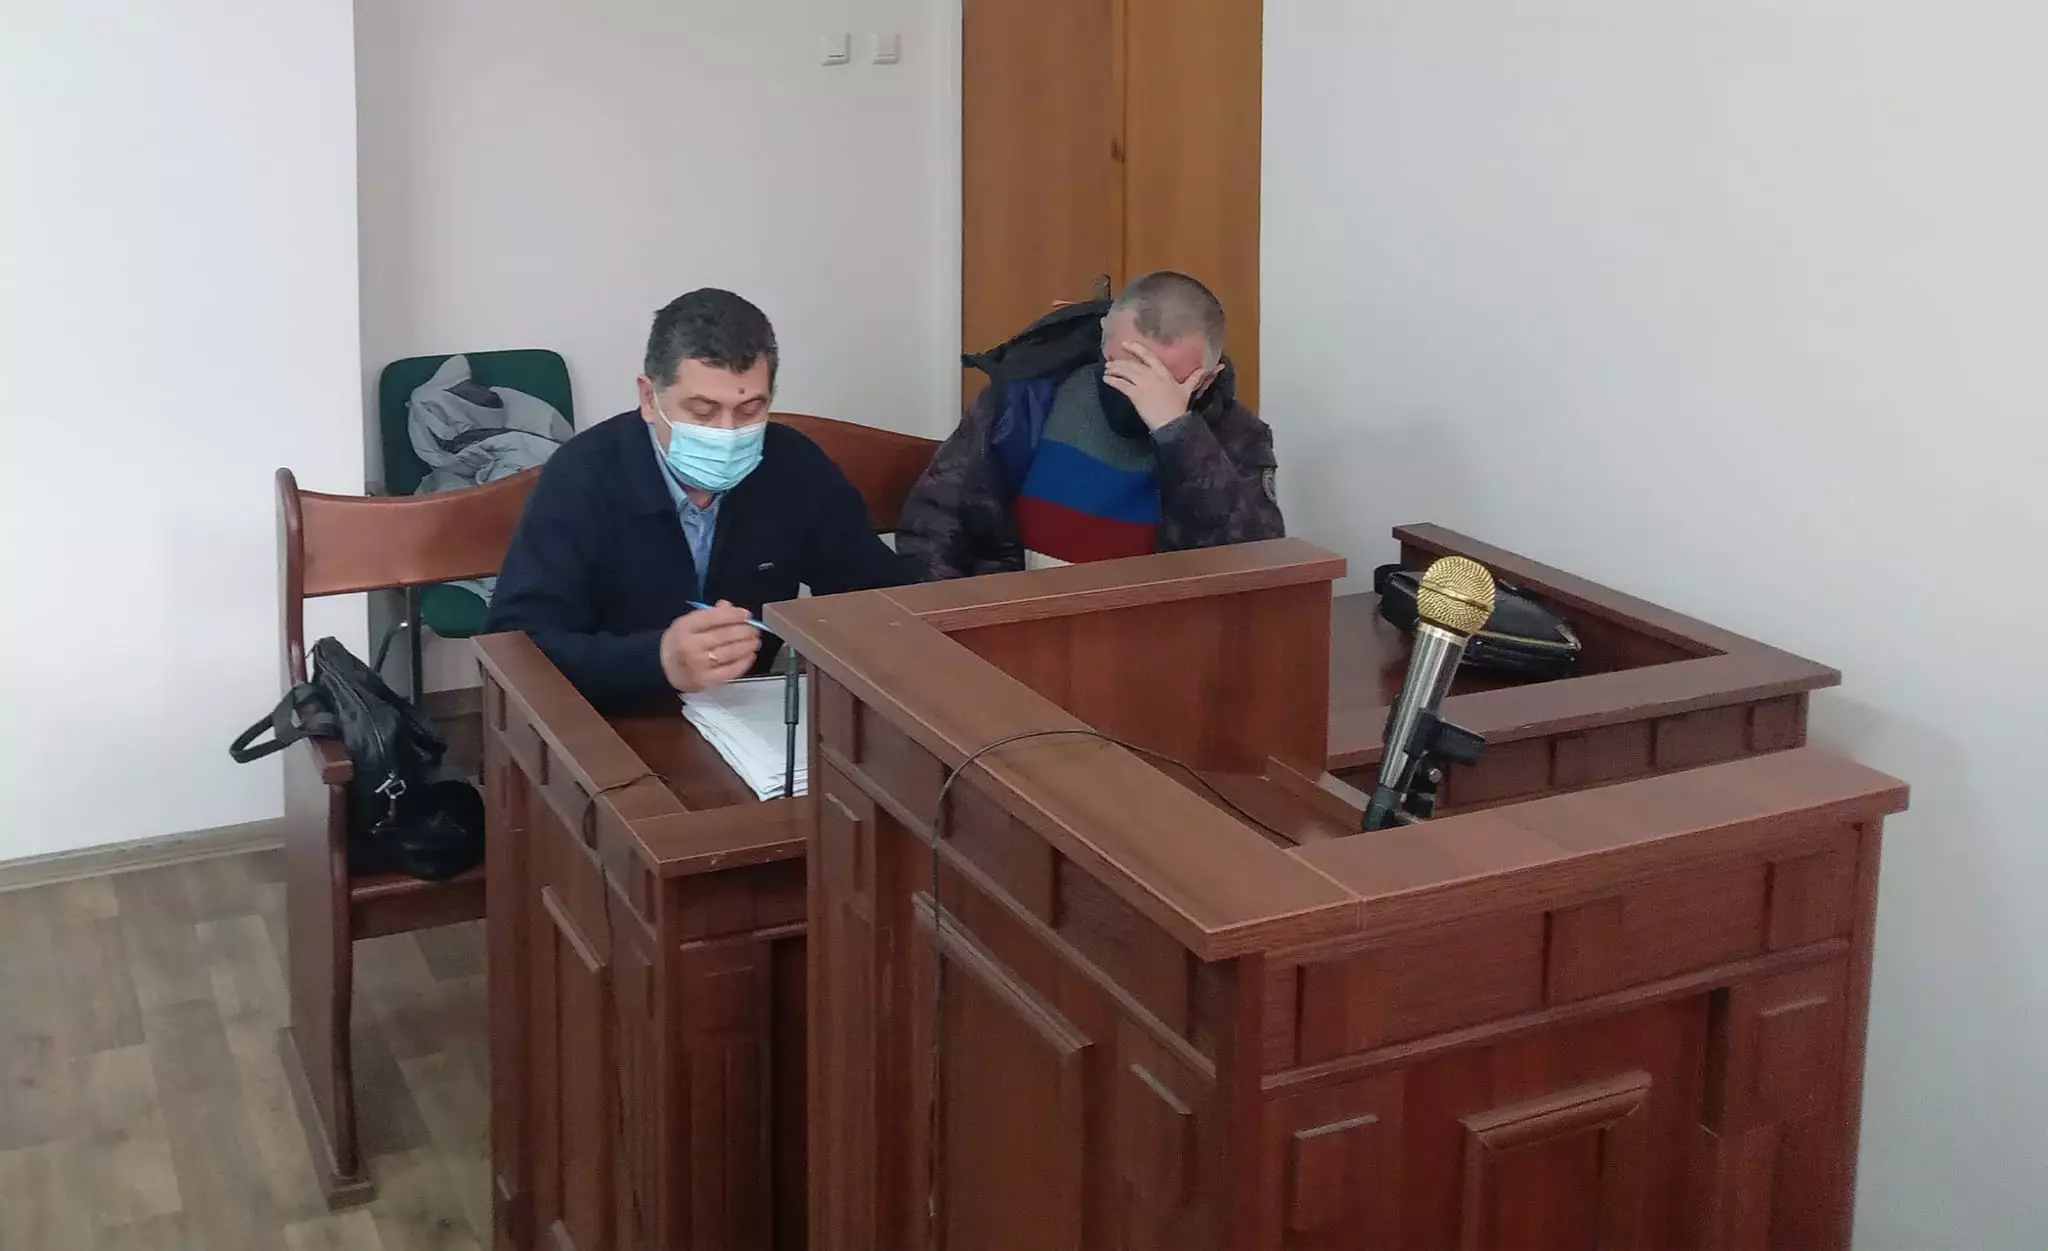 Журналістка Любов Величко заявила про перешкоджання в Дніпровському суді з боку адвоката. Він заперечує